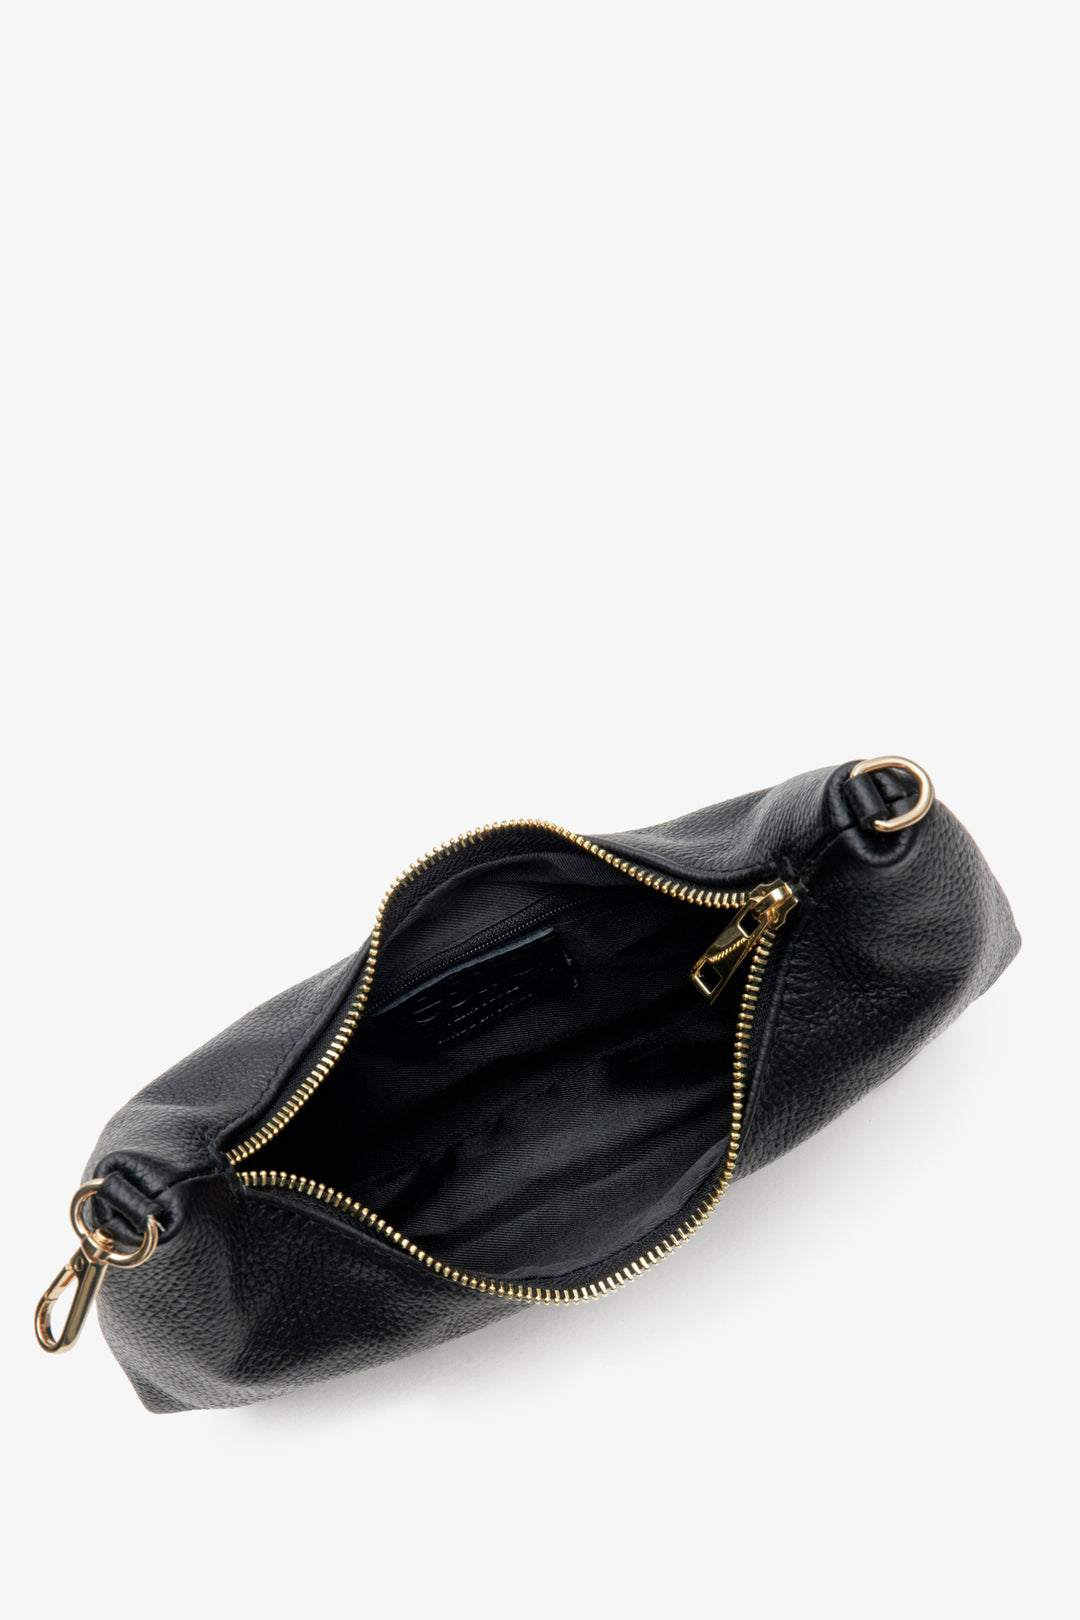 Mała czarna torebka damska Estro ze złotym łańcuszkiem